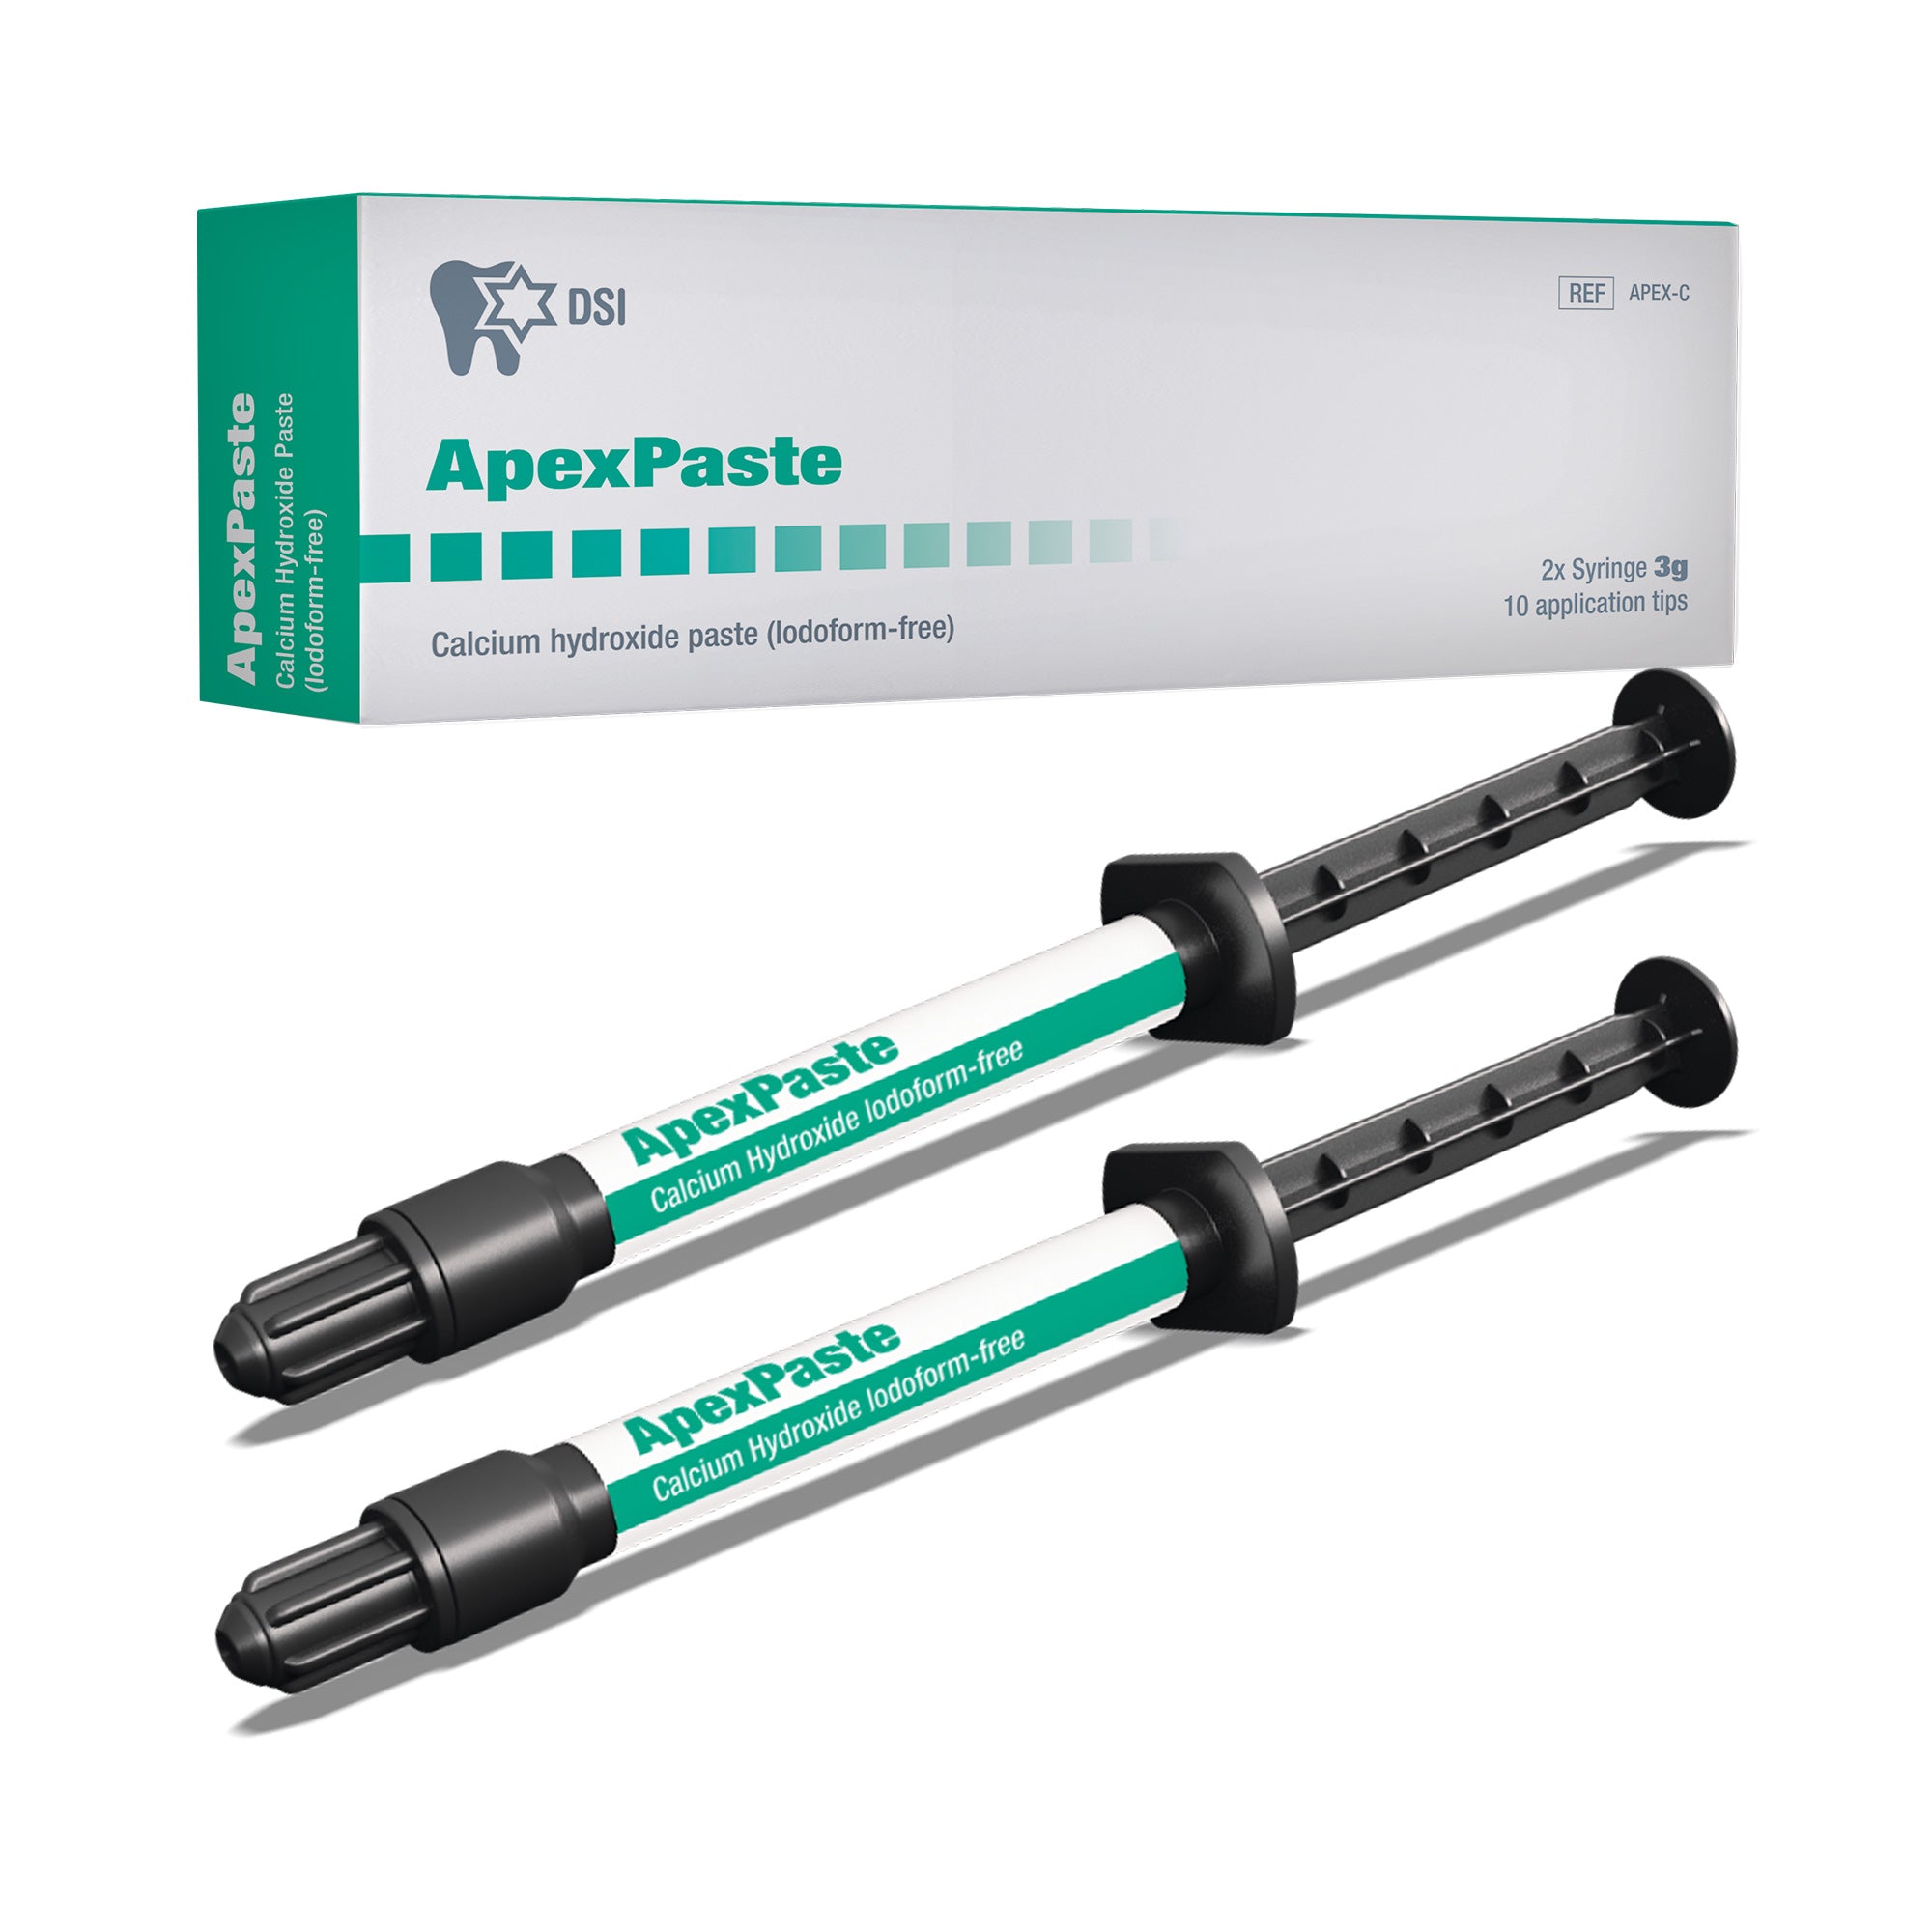 DSI ApexPaste Calcium Hydroxide Paste Iodoform-free 3g syringe